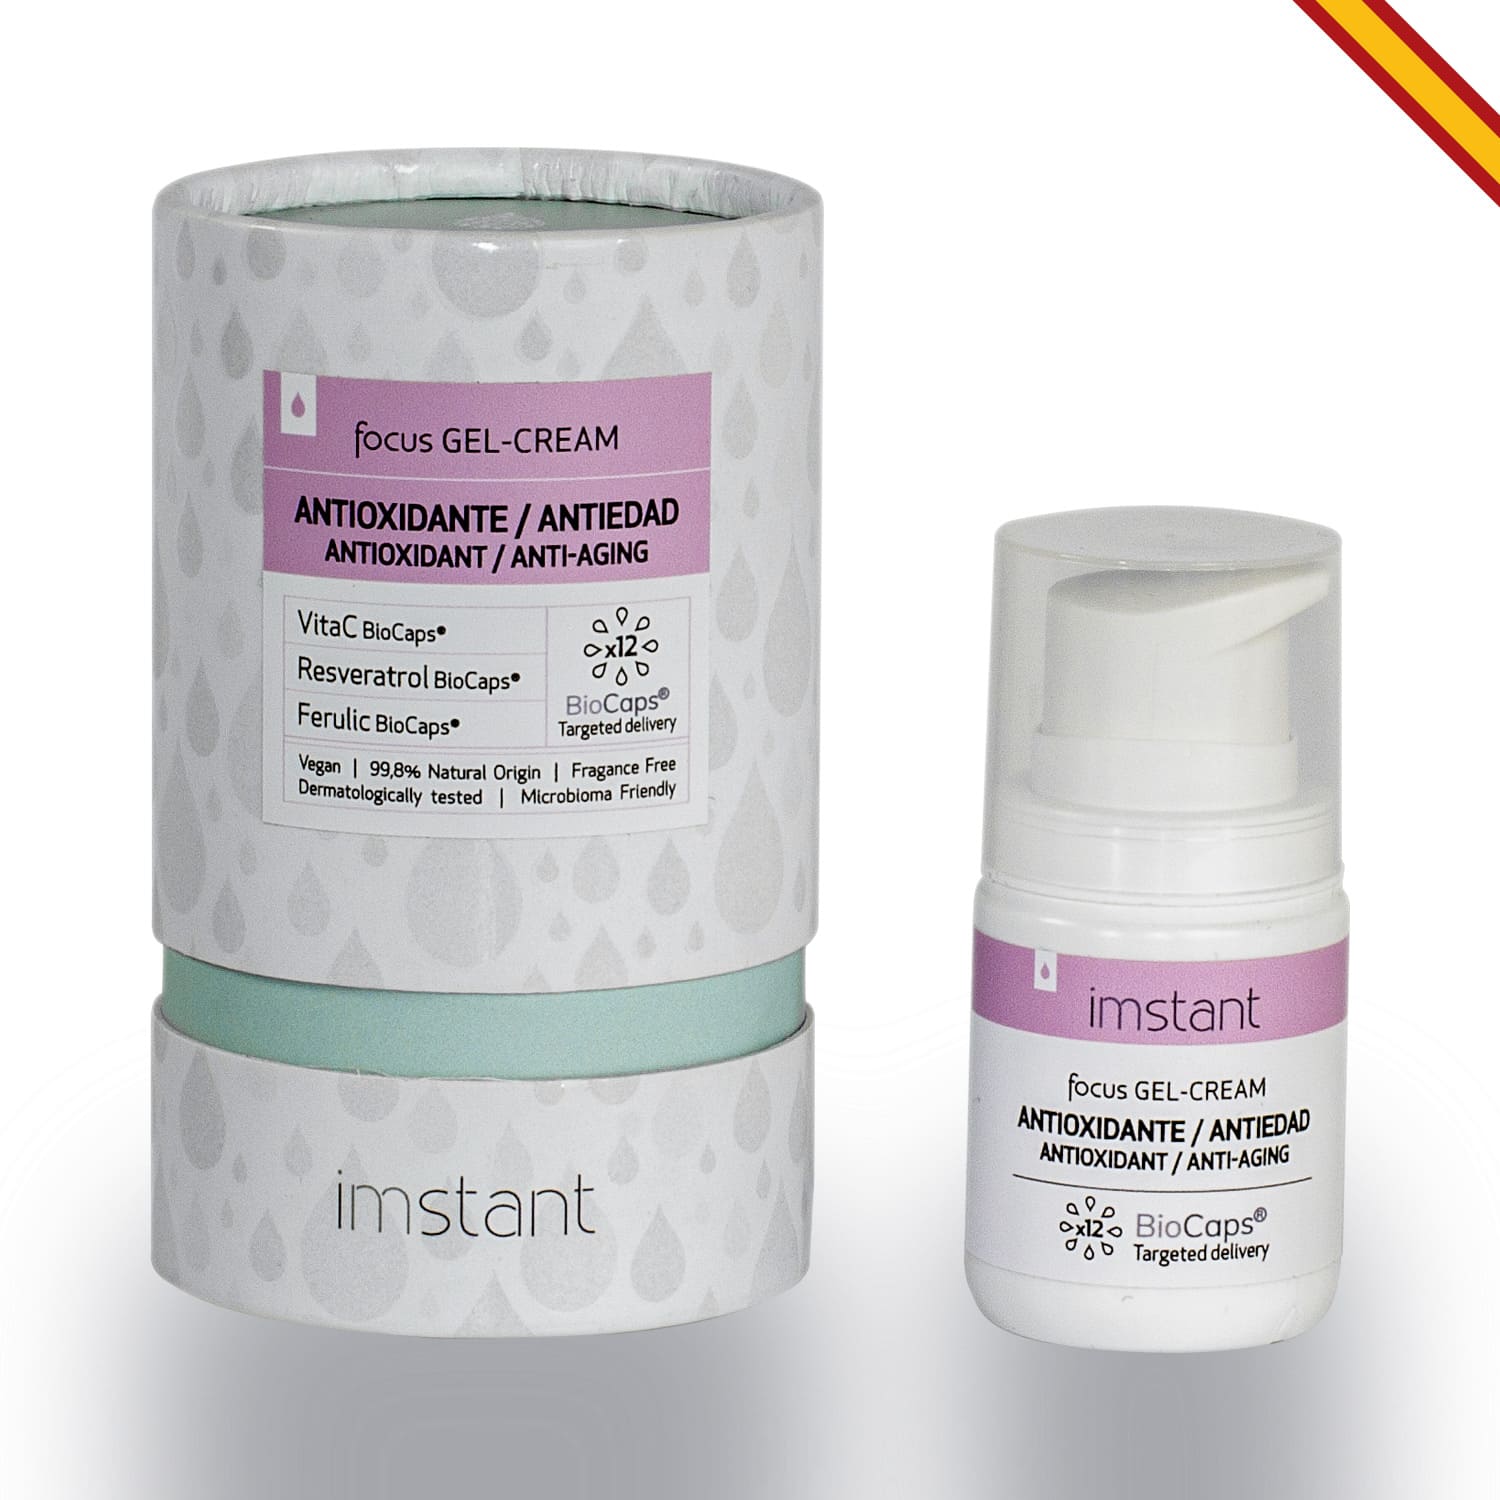 IMSTANT - IMSTANT Focus Línea Antioxidante Antiedad con Vitamina C, Resveratrol y Ácido Ferúlico. Disponible en Tres Formatos Distintos Crema, Gel-Crema y Booster.